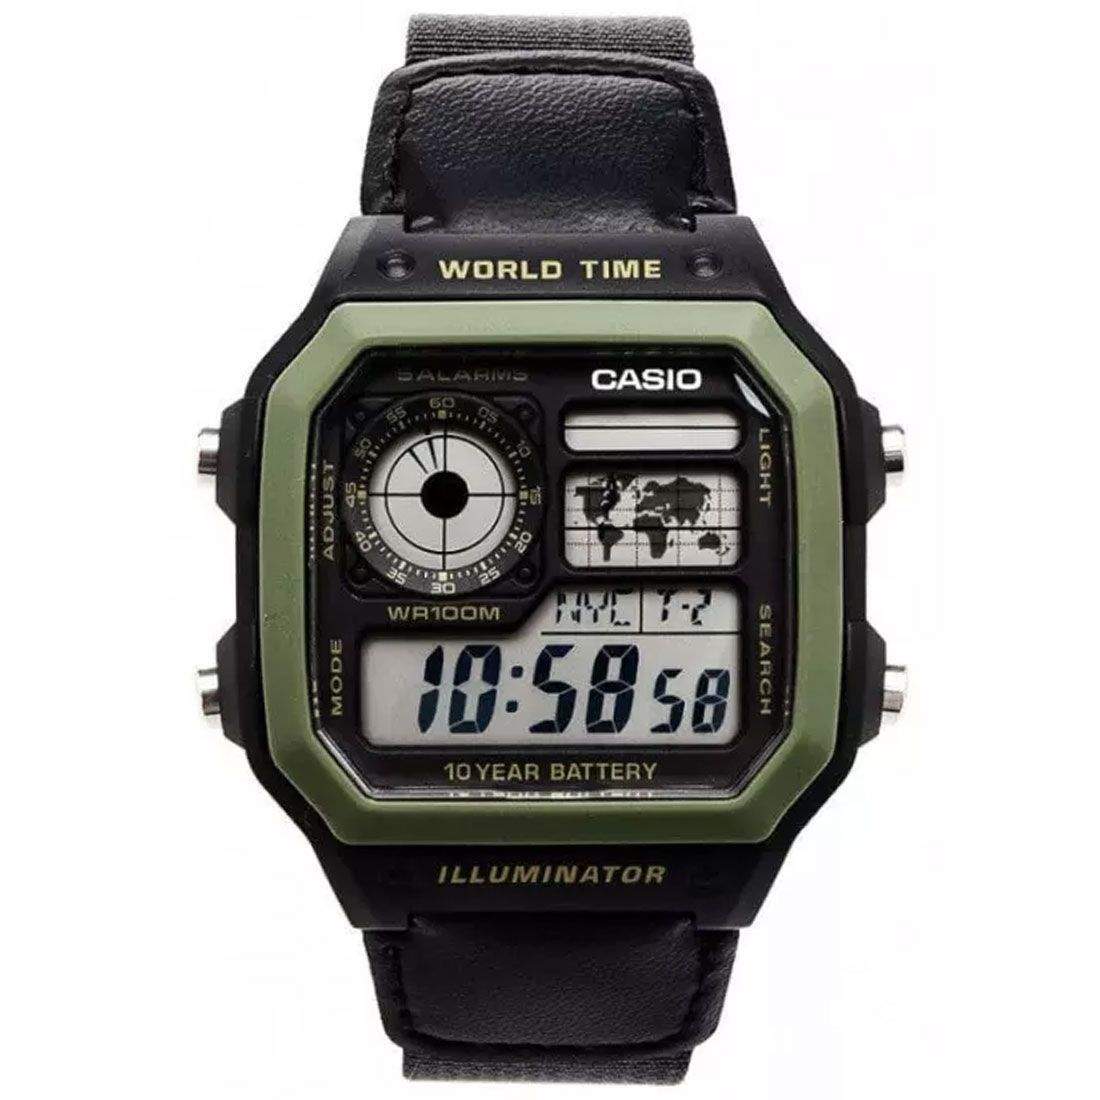 Corte adyacente El otro día reloj deportivo hombre Casio AE-1200WHB-1B Luz LED Hora Mundial Cronómetro  5 Alarmas 10 años batería